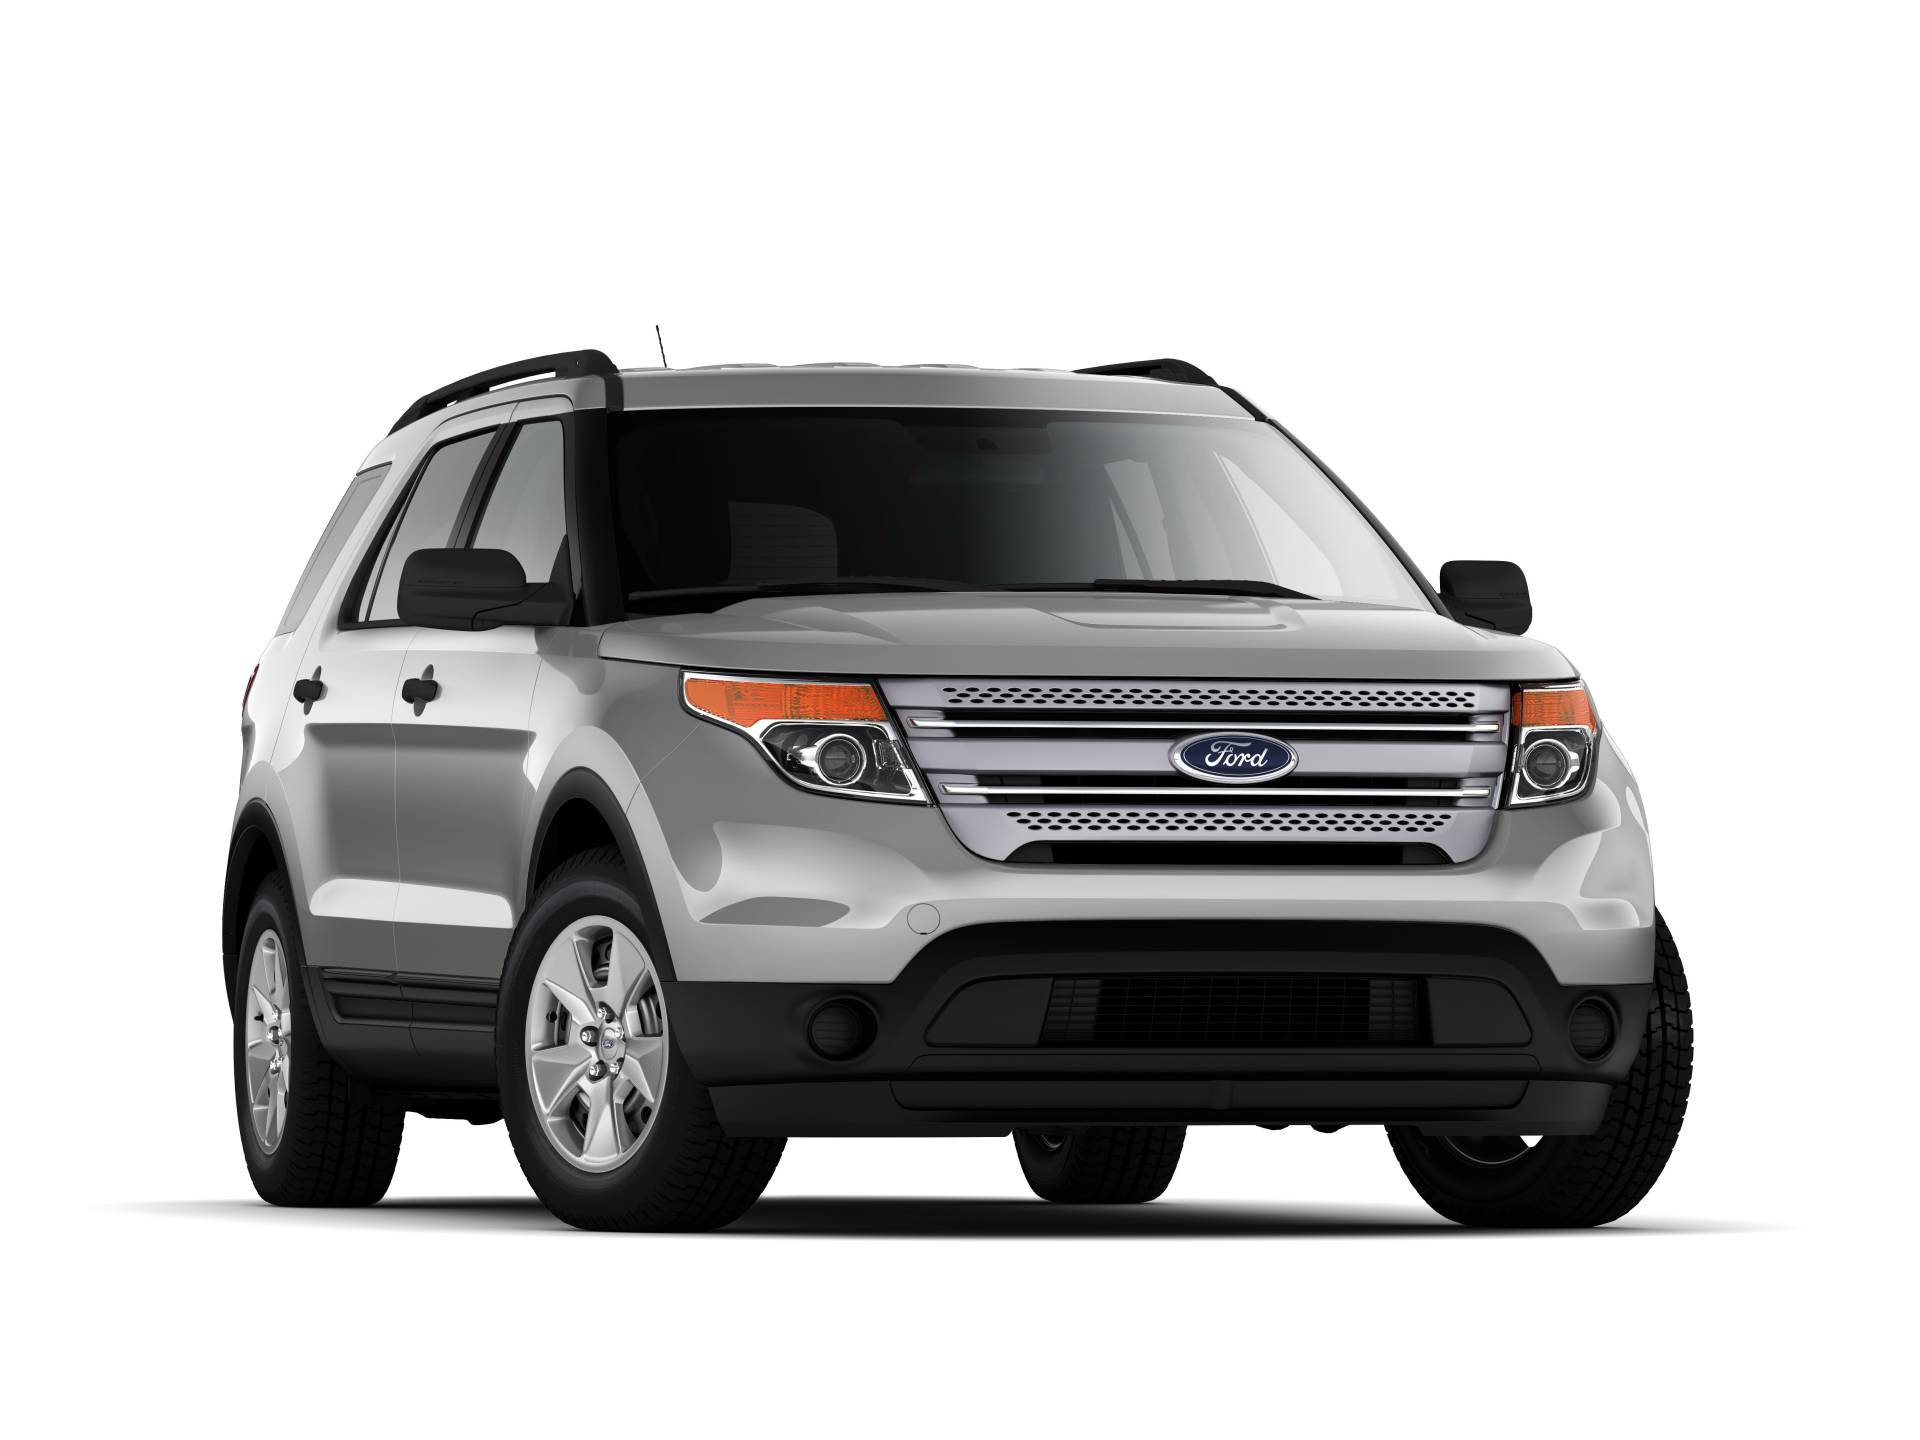 2013 Ford Explorer News and Information - conceptcarz.com